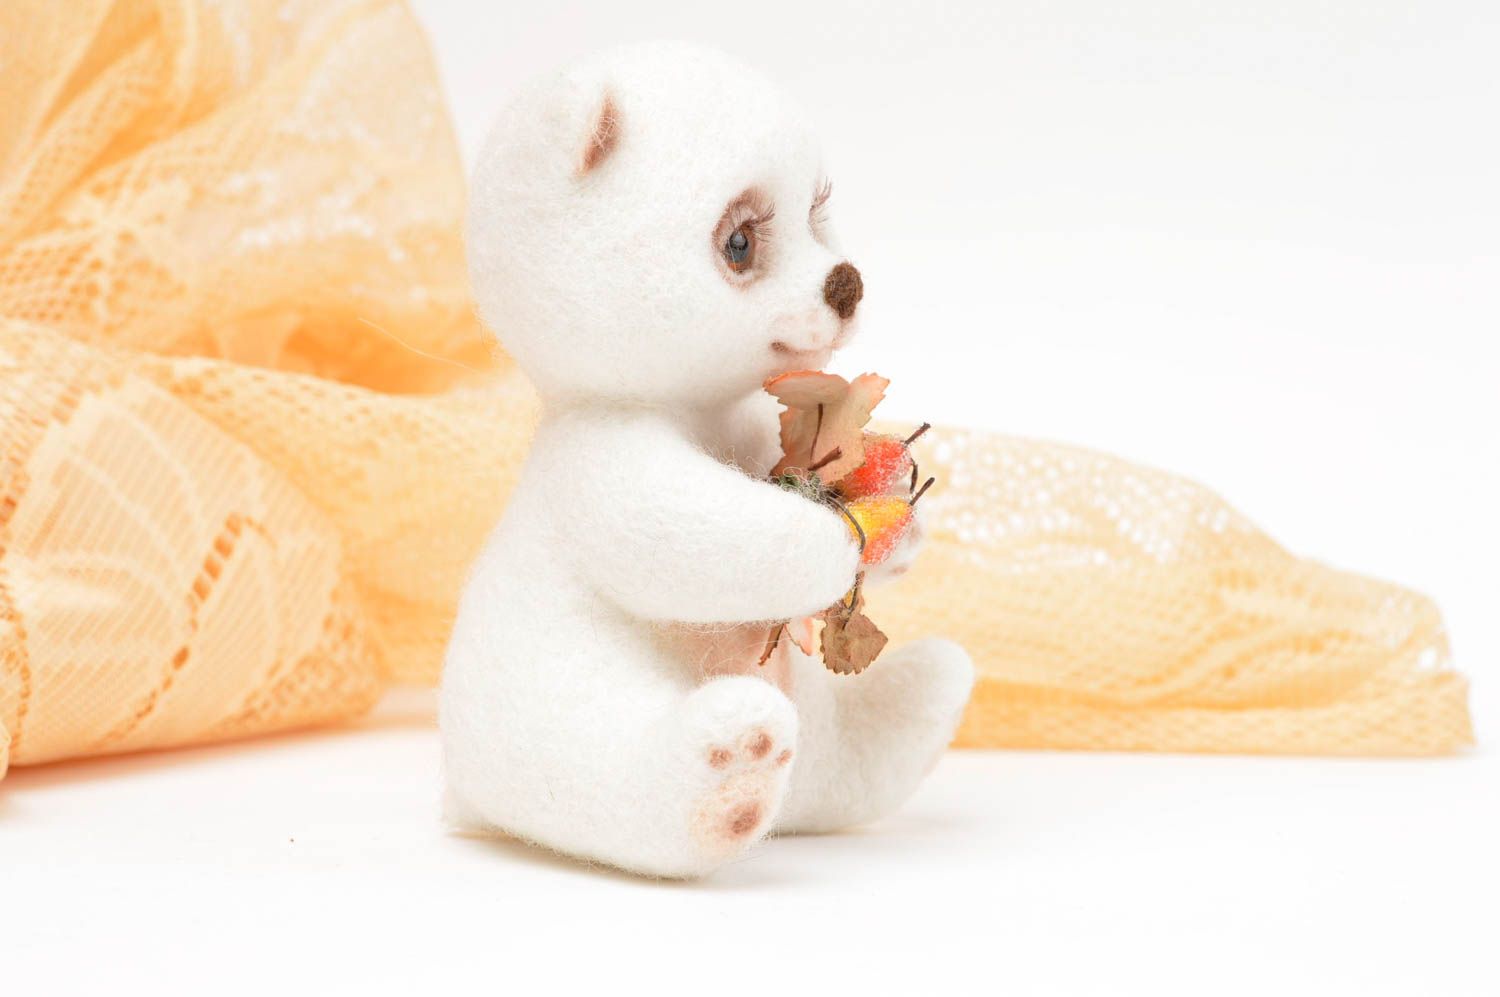 Игрушка ручной работы интерьерная игрушка мягкая игрушка в виде медвежонка фото 2